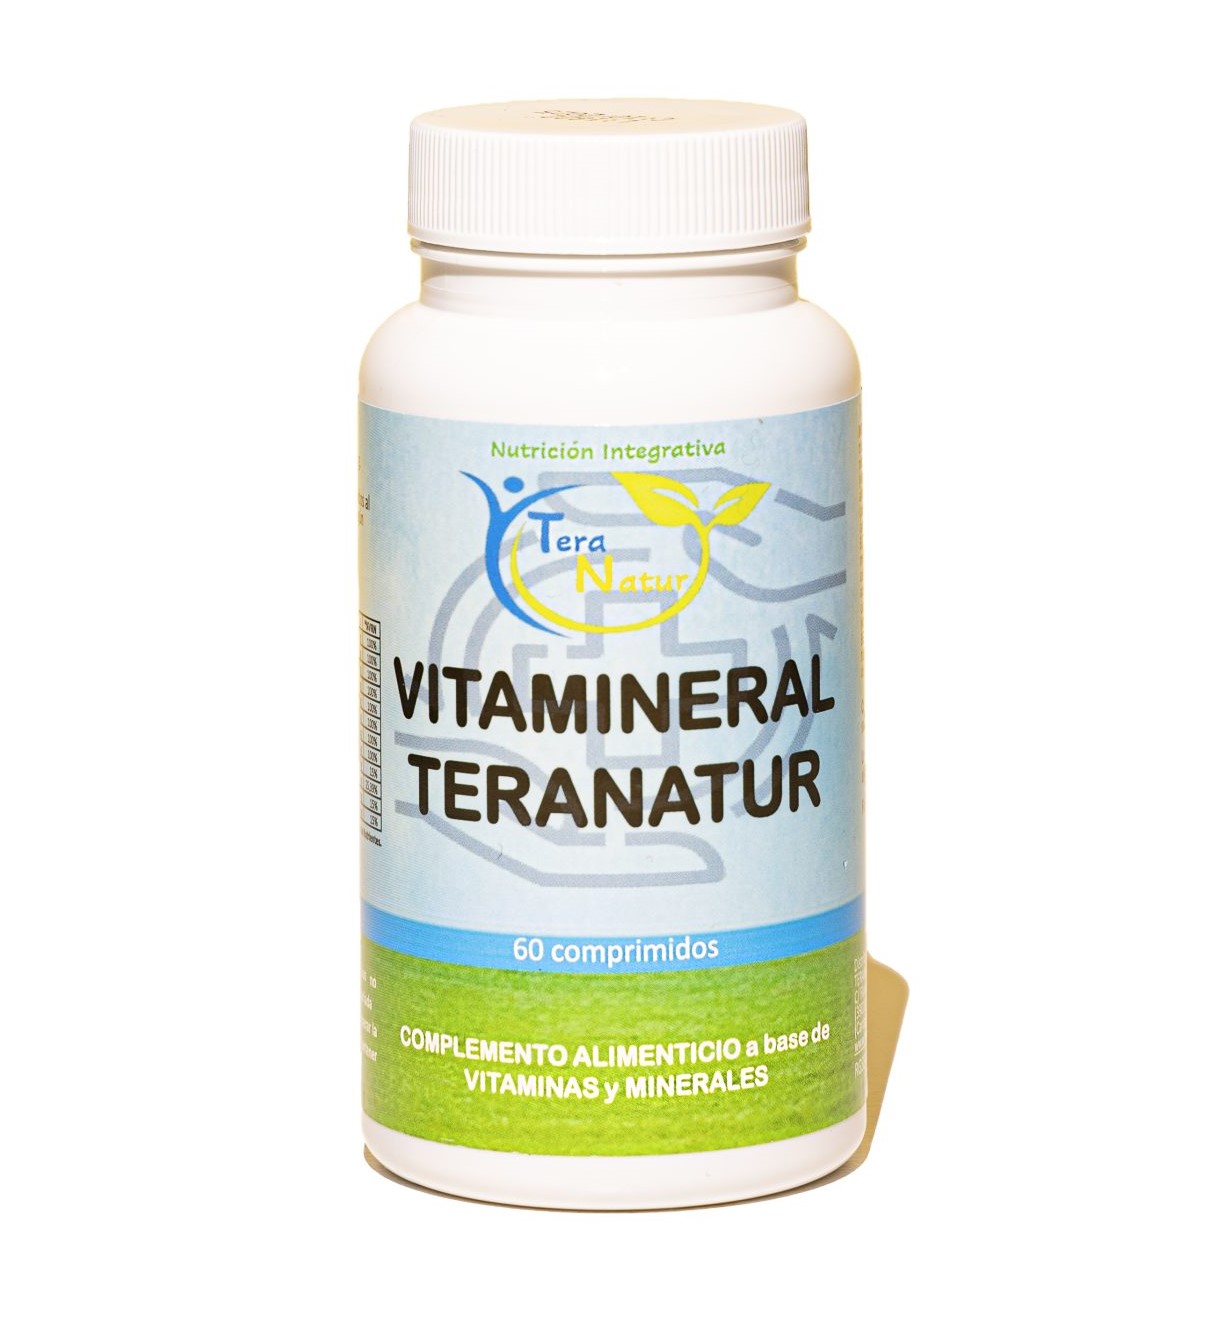 VITAMINERAL TERANATUR (60 comprimidos)